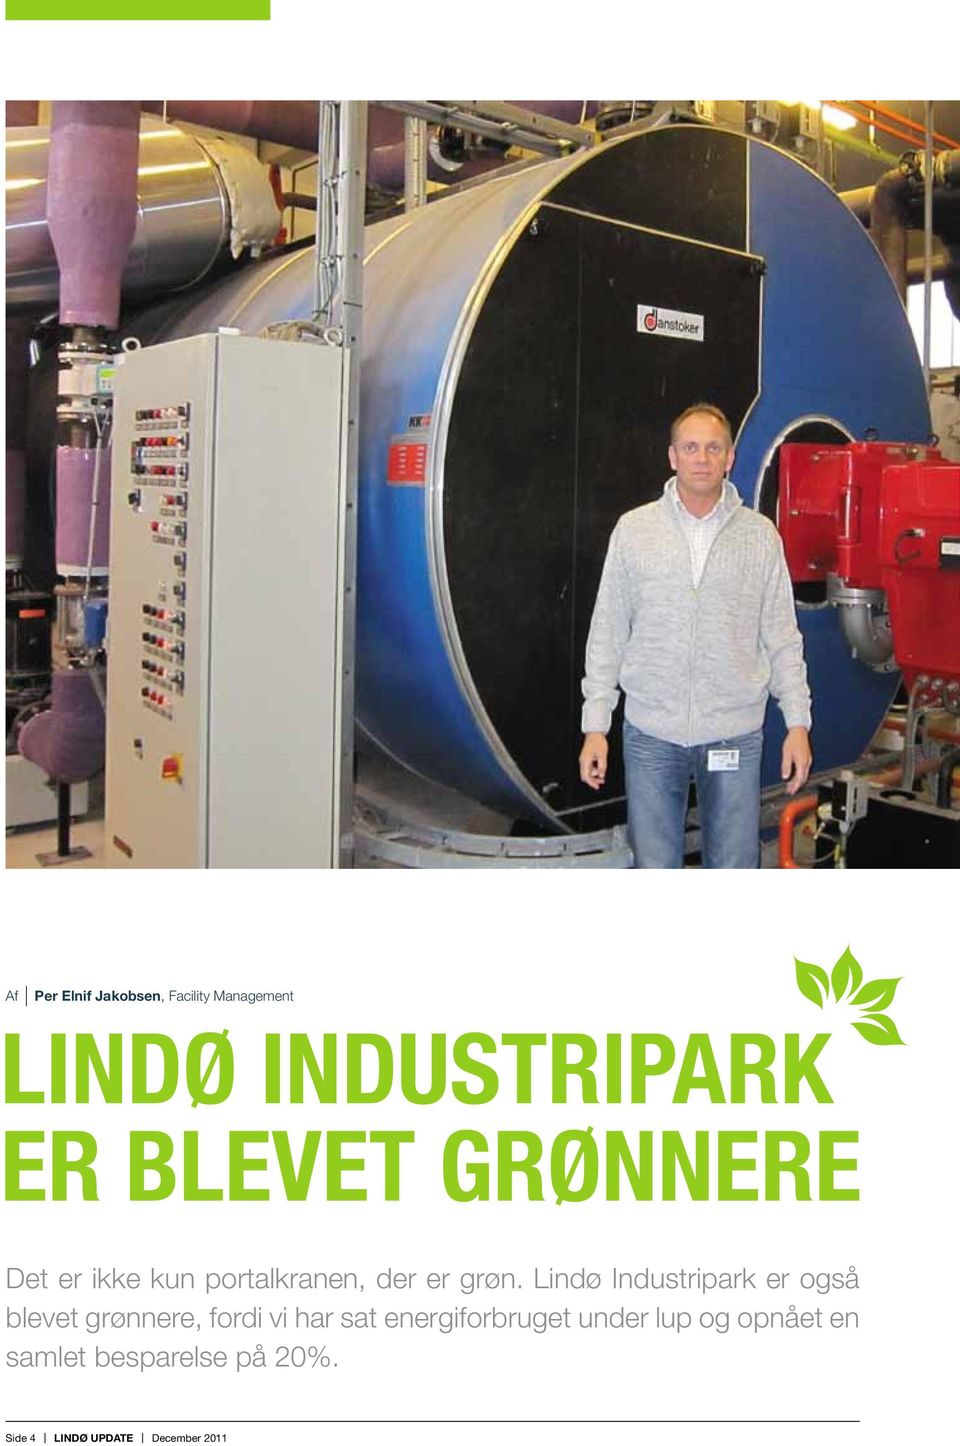 Lindø Industripark er også blevet grønnere, fordi vi har sat